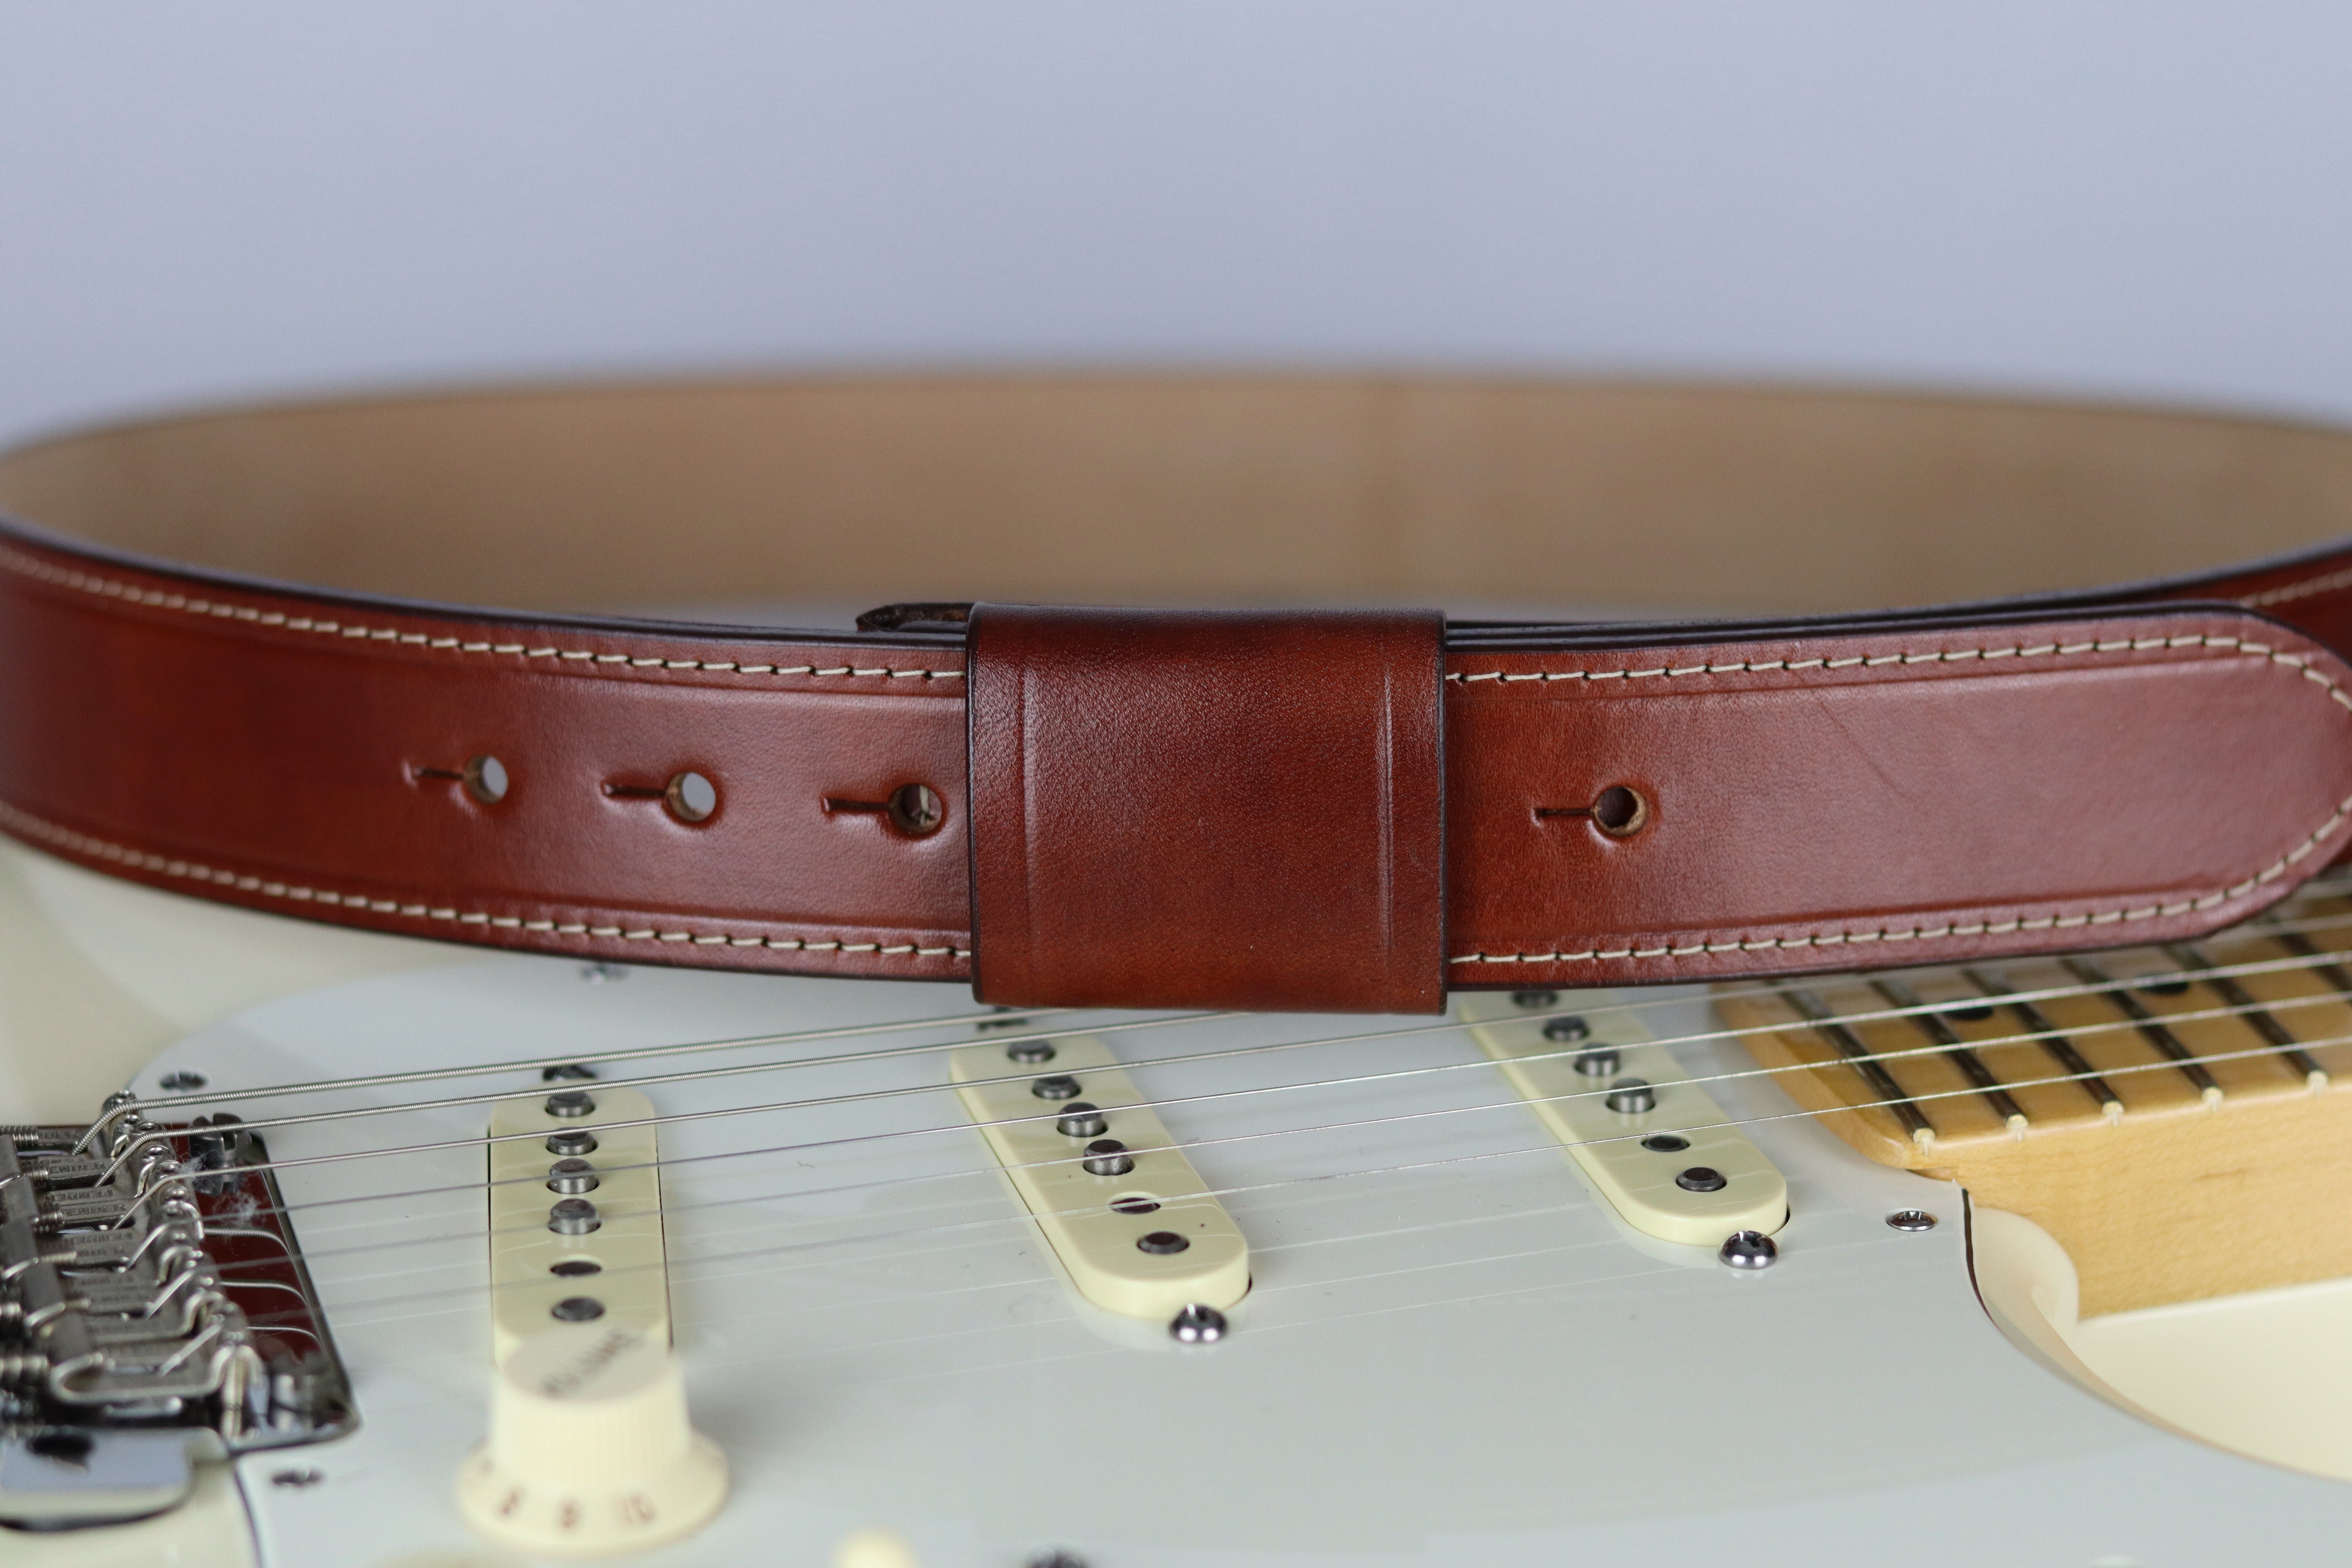 Guitar Player's Belt